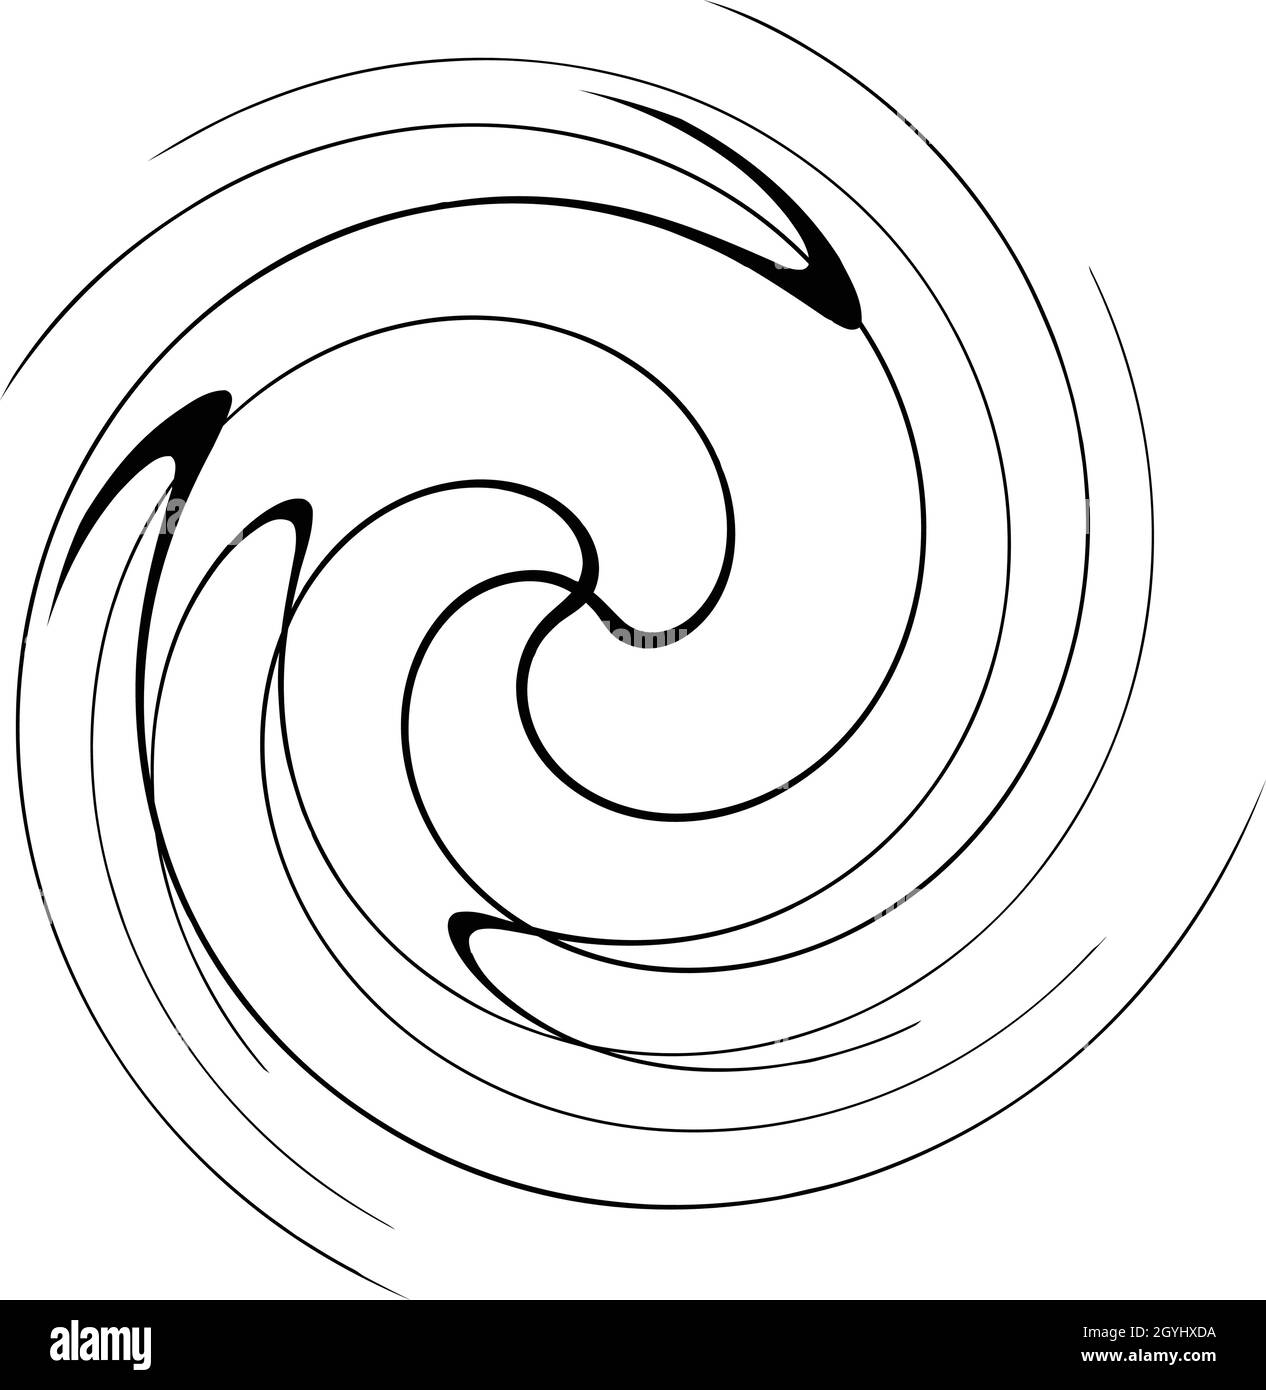 Spirale, tourbillon, tourbillon, élément de volute.Bain bouillonnant, effet  tourbillon.Lignes circulaires et radiales avec rotation - illustrations  vectorielles de stock, graphiques clip-art Image Vectorielle Stock - Alamy